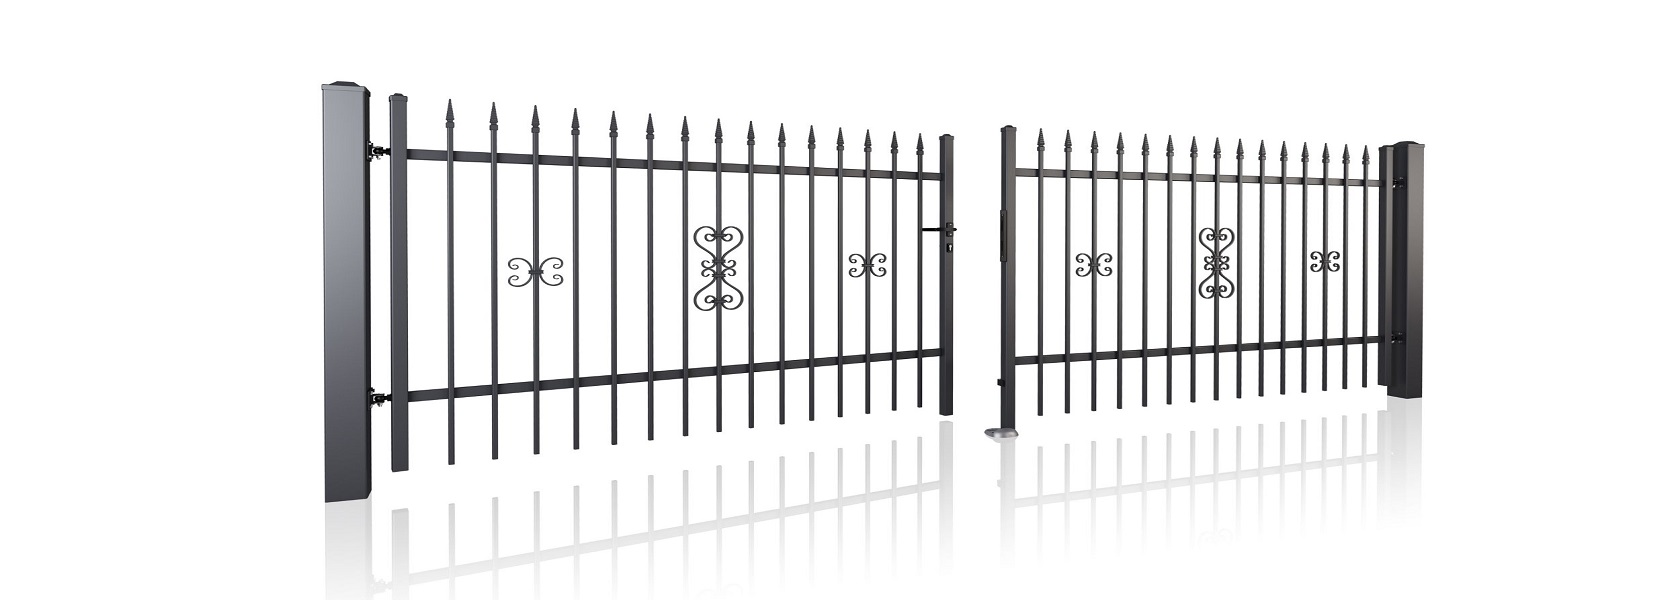 Property fences and gates BASIC II AW.10.93